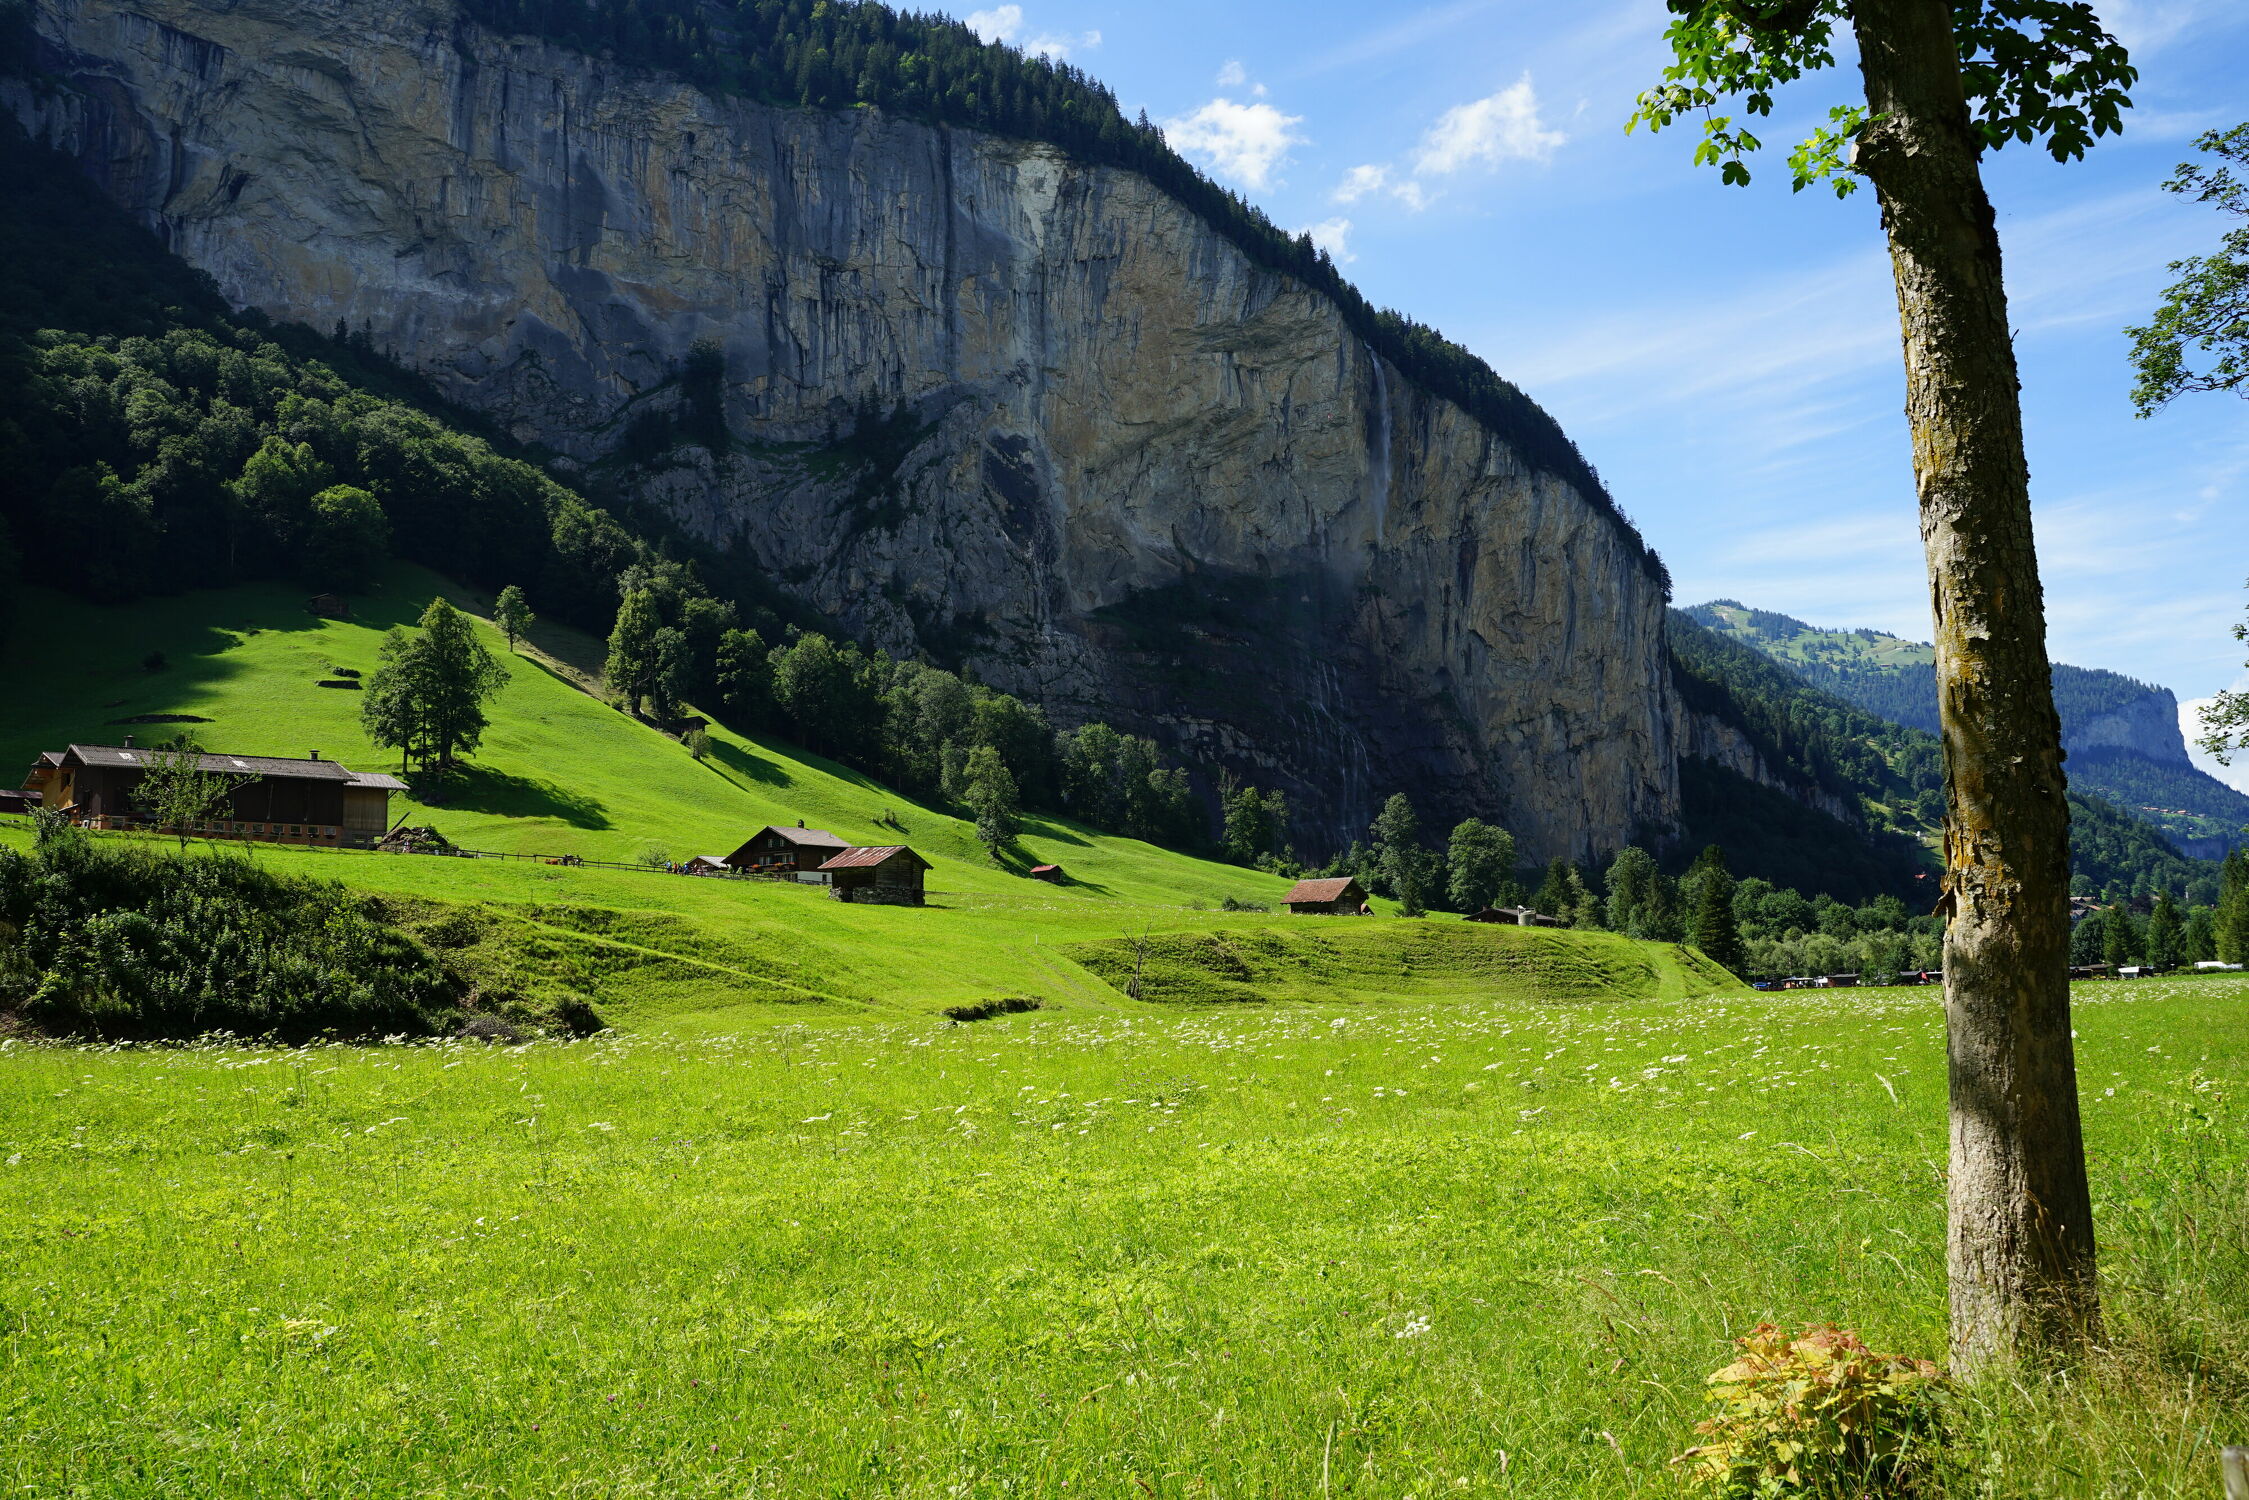 Bild mit Berge, Alpen, Wald, Baum, Landschaft, Gras, Fels, Schweiz, Felswände, grüne Wiese